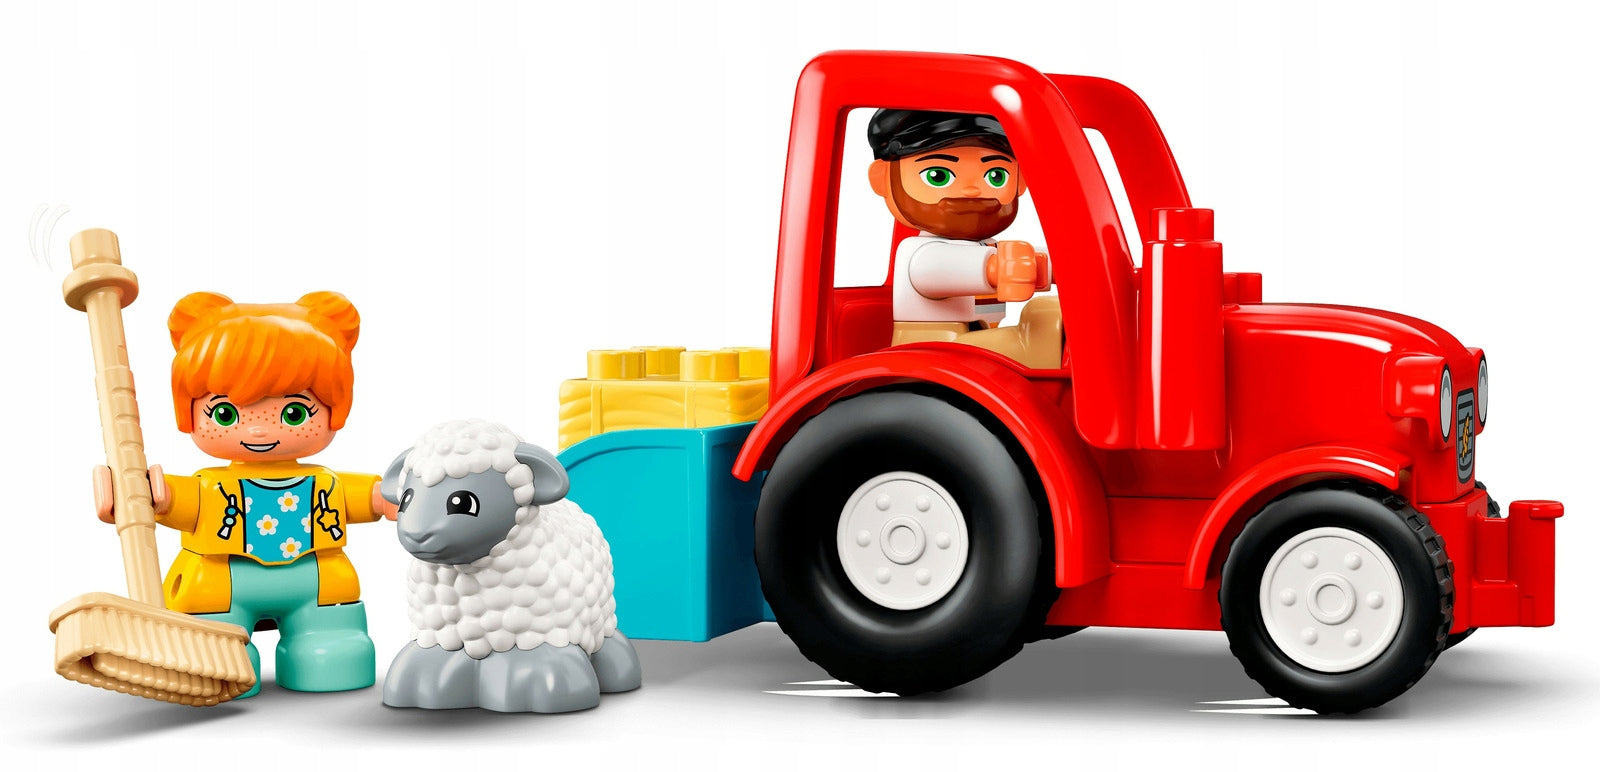 Lego Duplo traktorius ir ūkio gyvūnai 10950 2+